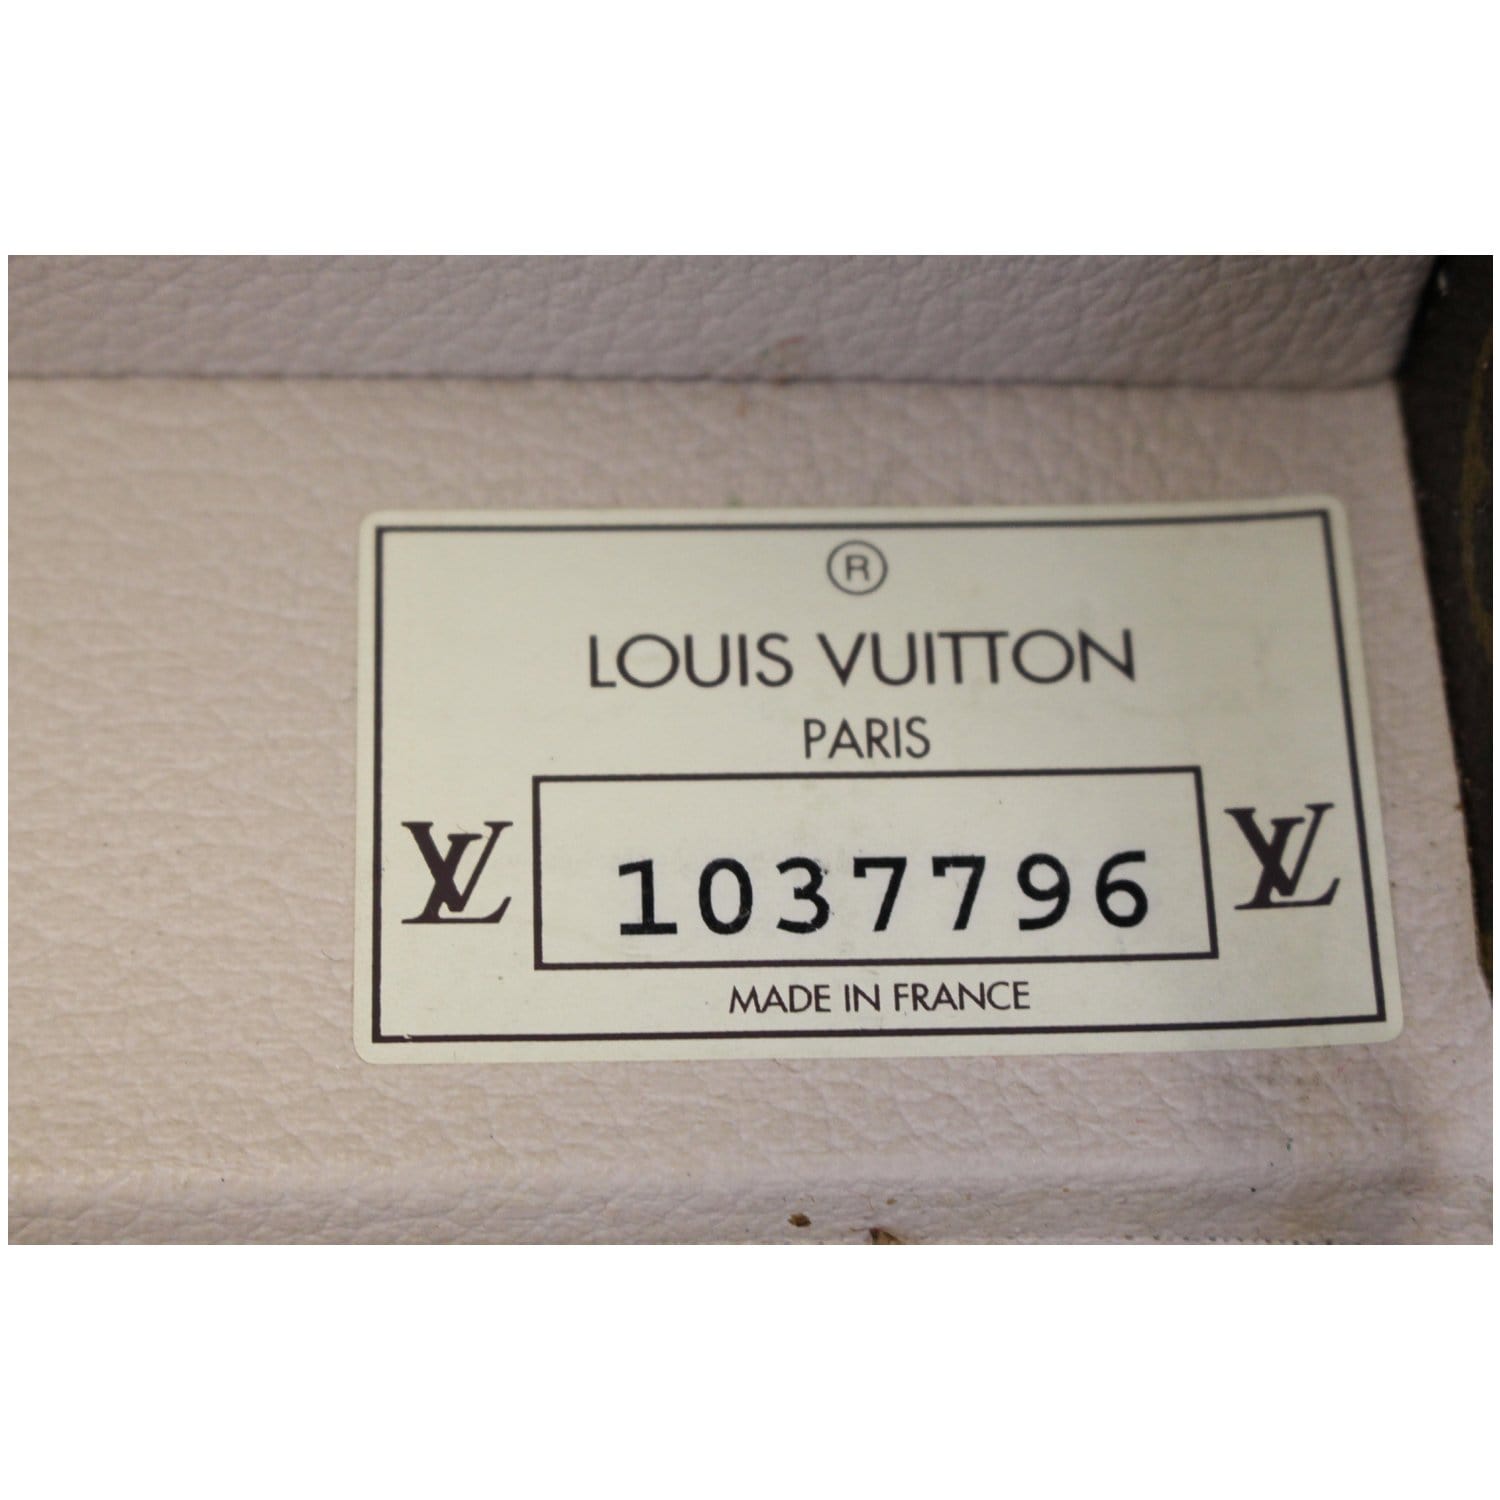 LOUIS VUITTON Boite Pharmacie Toiletries Case